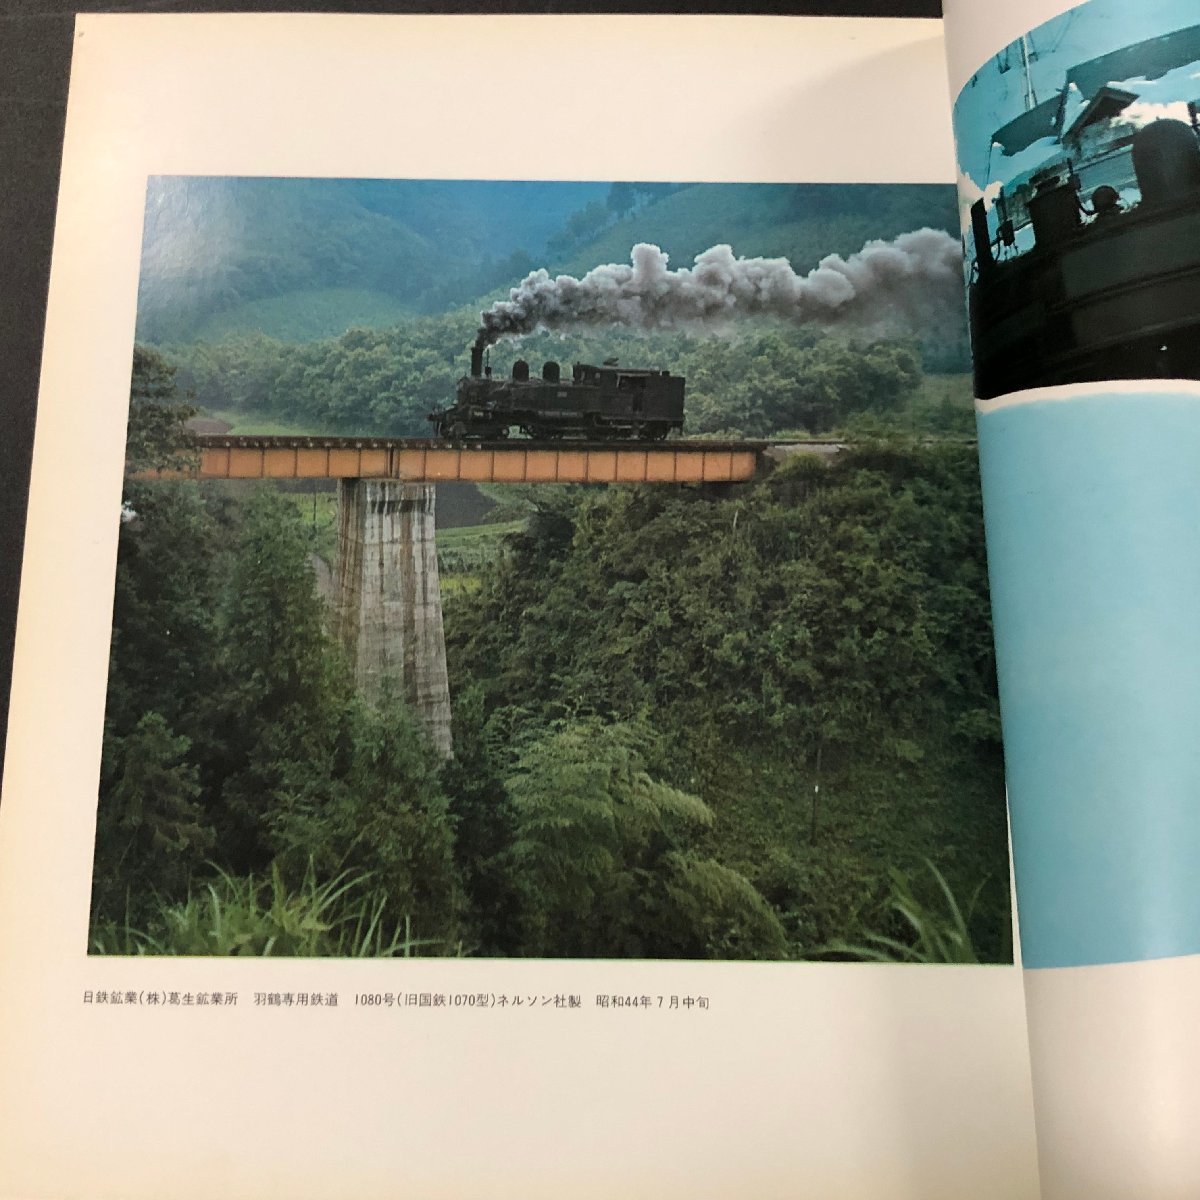 『汽車』中村由信写真集 日本の風土と蒸気機関車 昭和46年_画像2